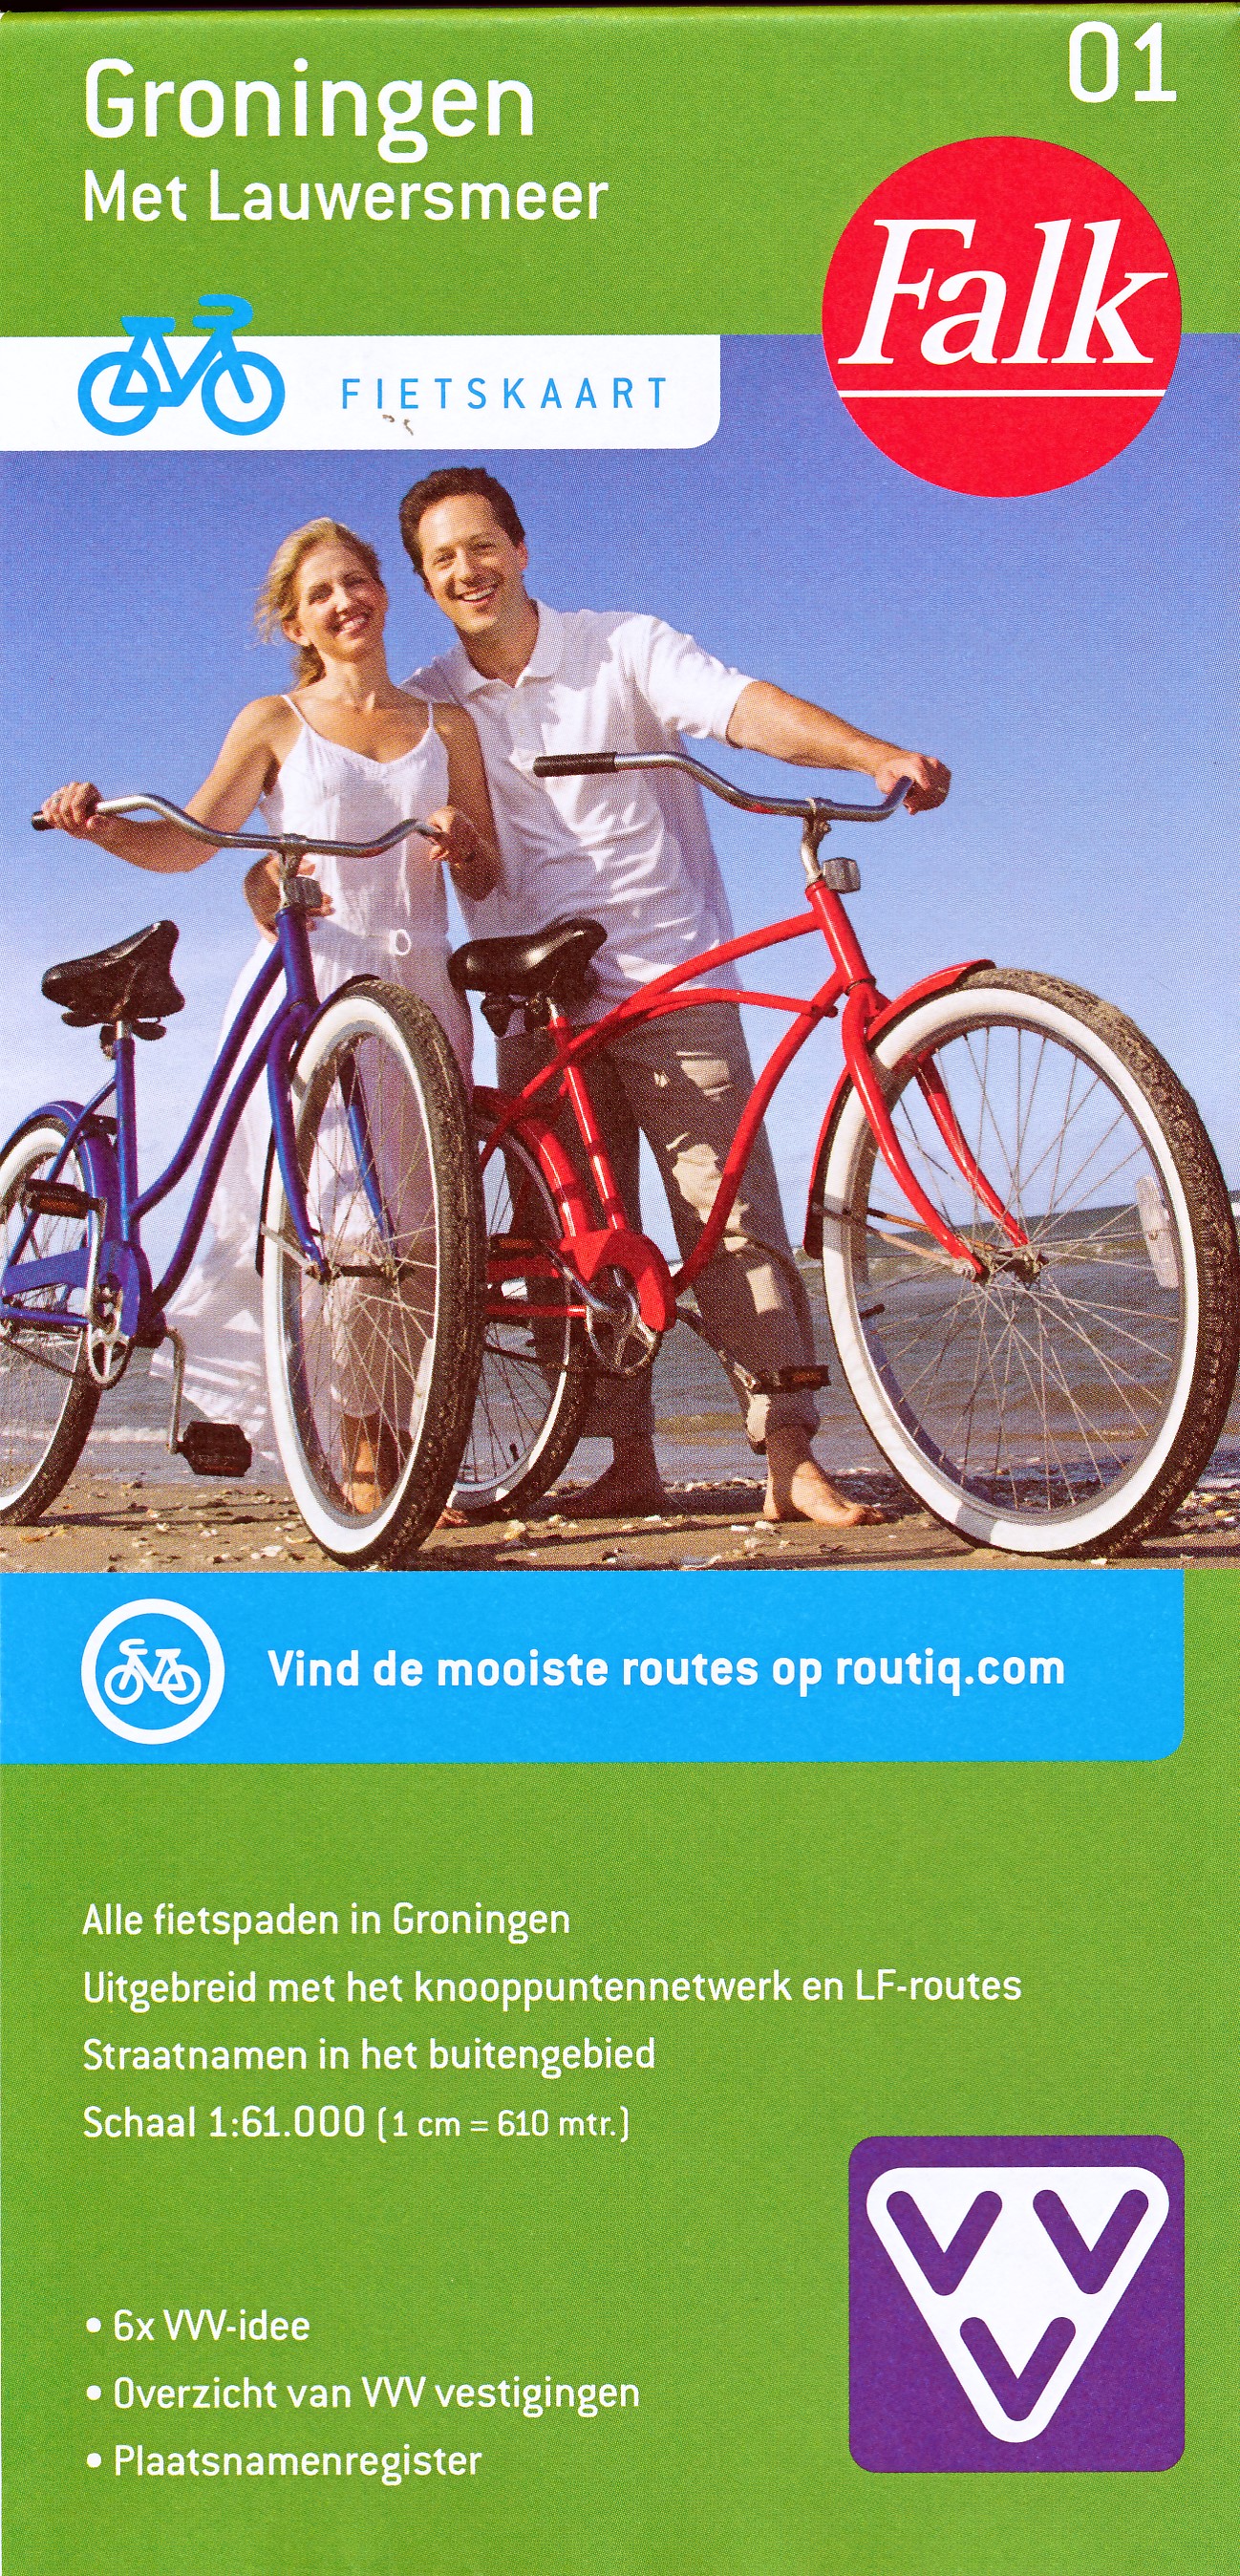 Online bestellen: Fietskaart 01 Groningen met Lauwersmeer | Falk